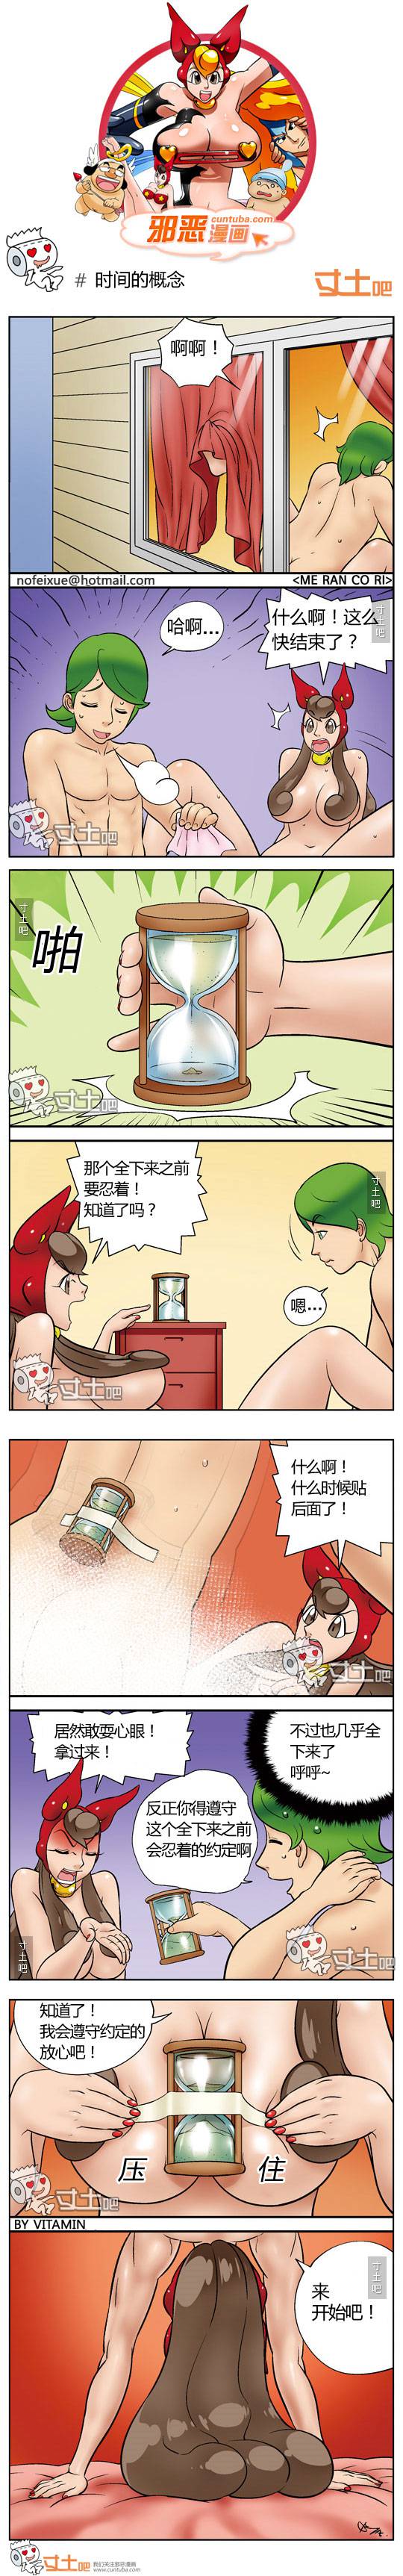 邪恶漫画爆笑囧图第127刊：方法很重要